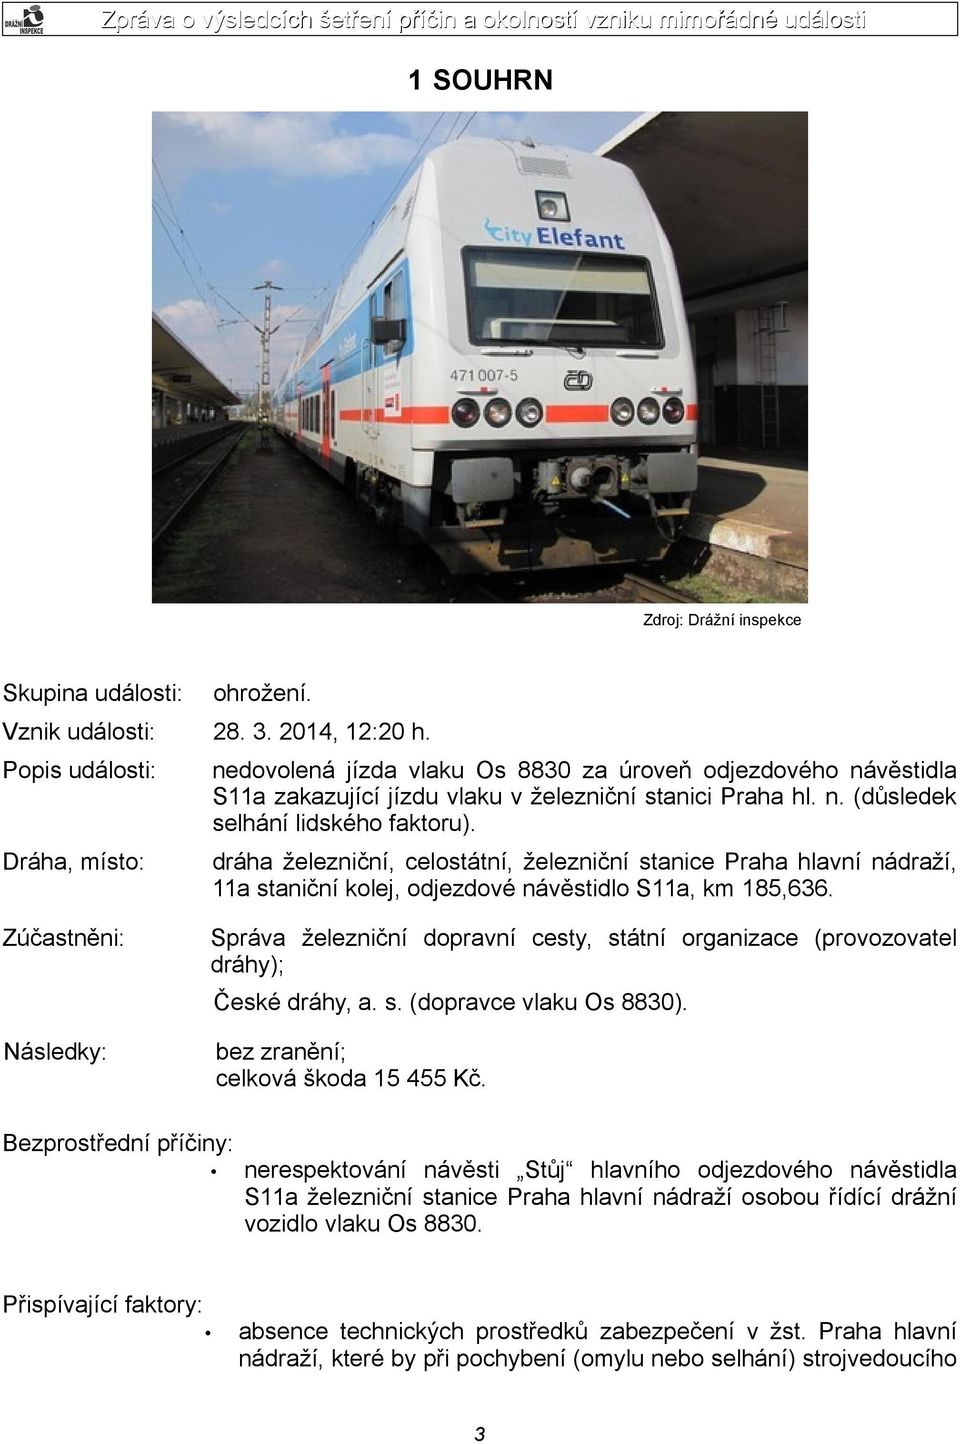 dráha železniční, celostátní, železniční stanice Praha hlavní nádraží, 11a staniční kolej, odjezdové návěstidlo S11a, km 185,636.